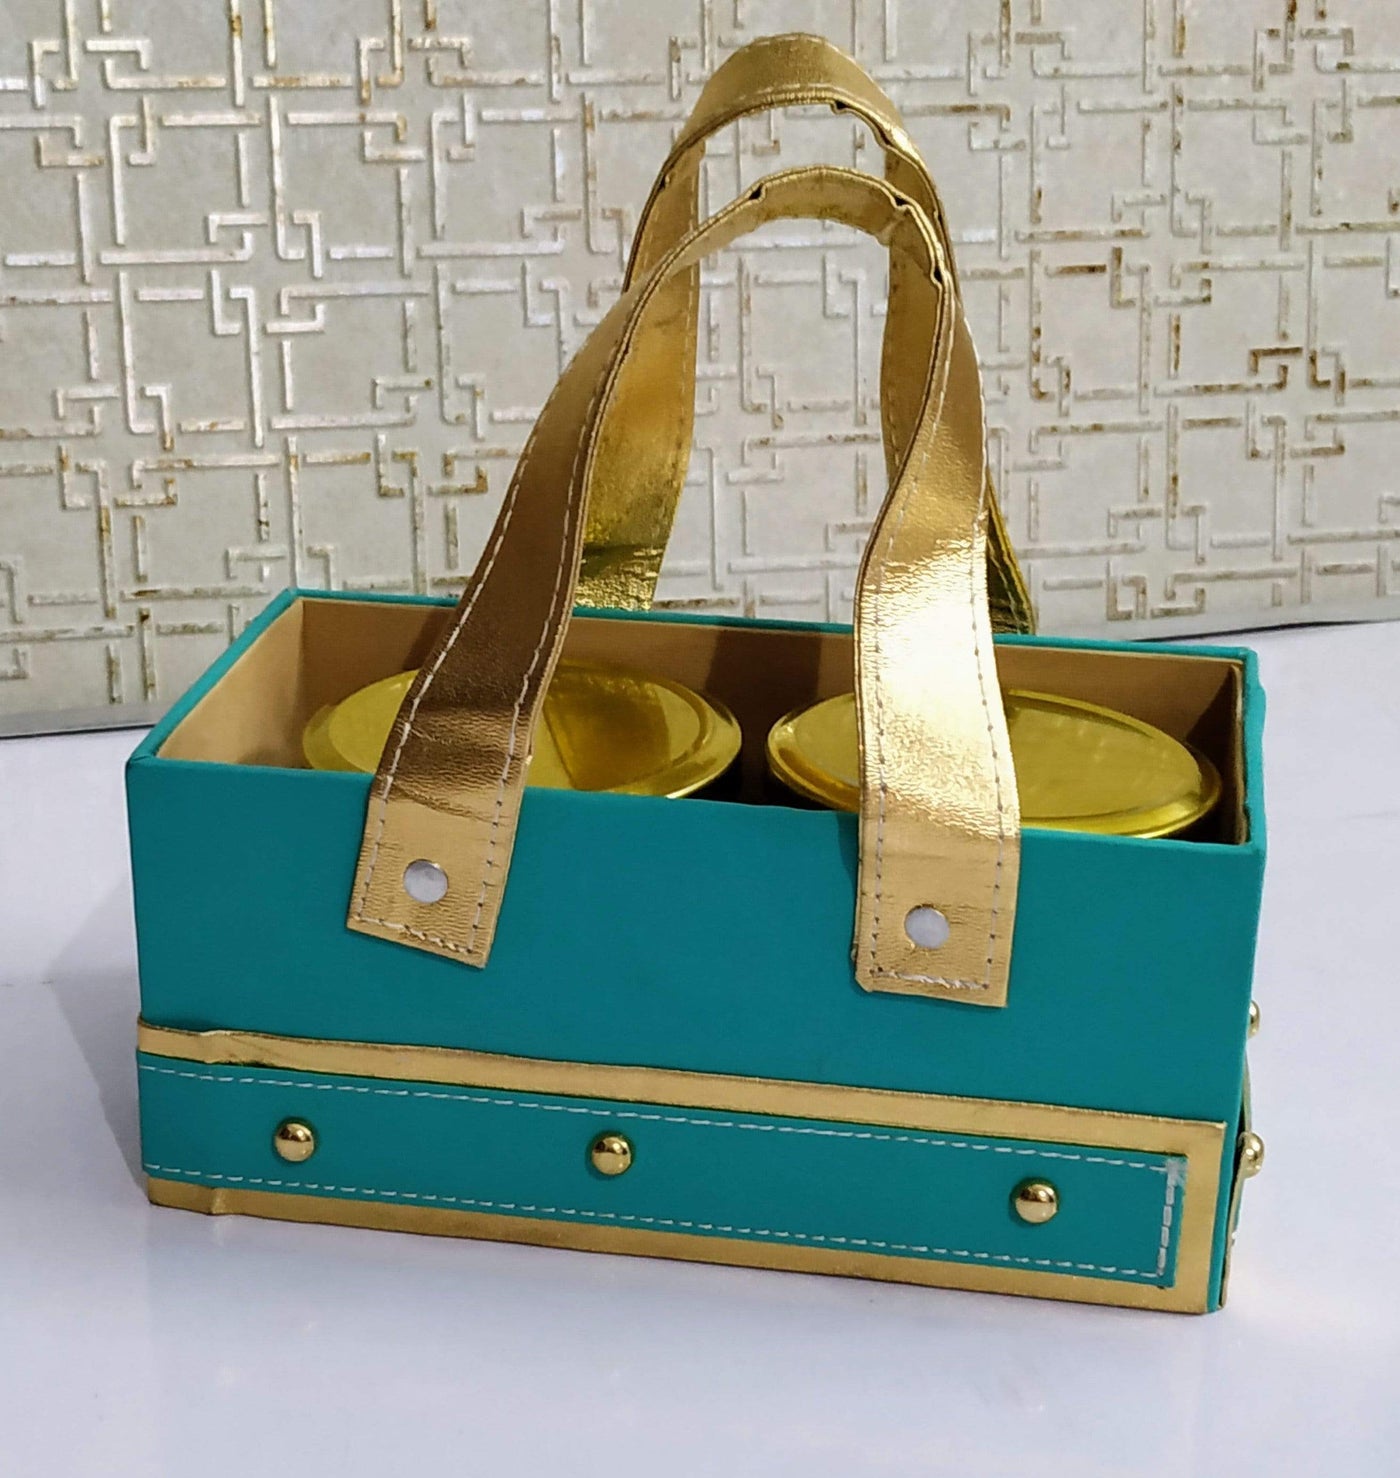 Gift basket for giveaways